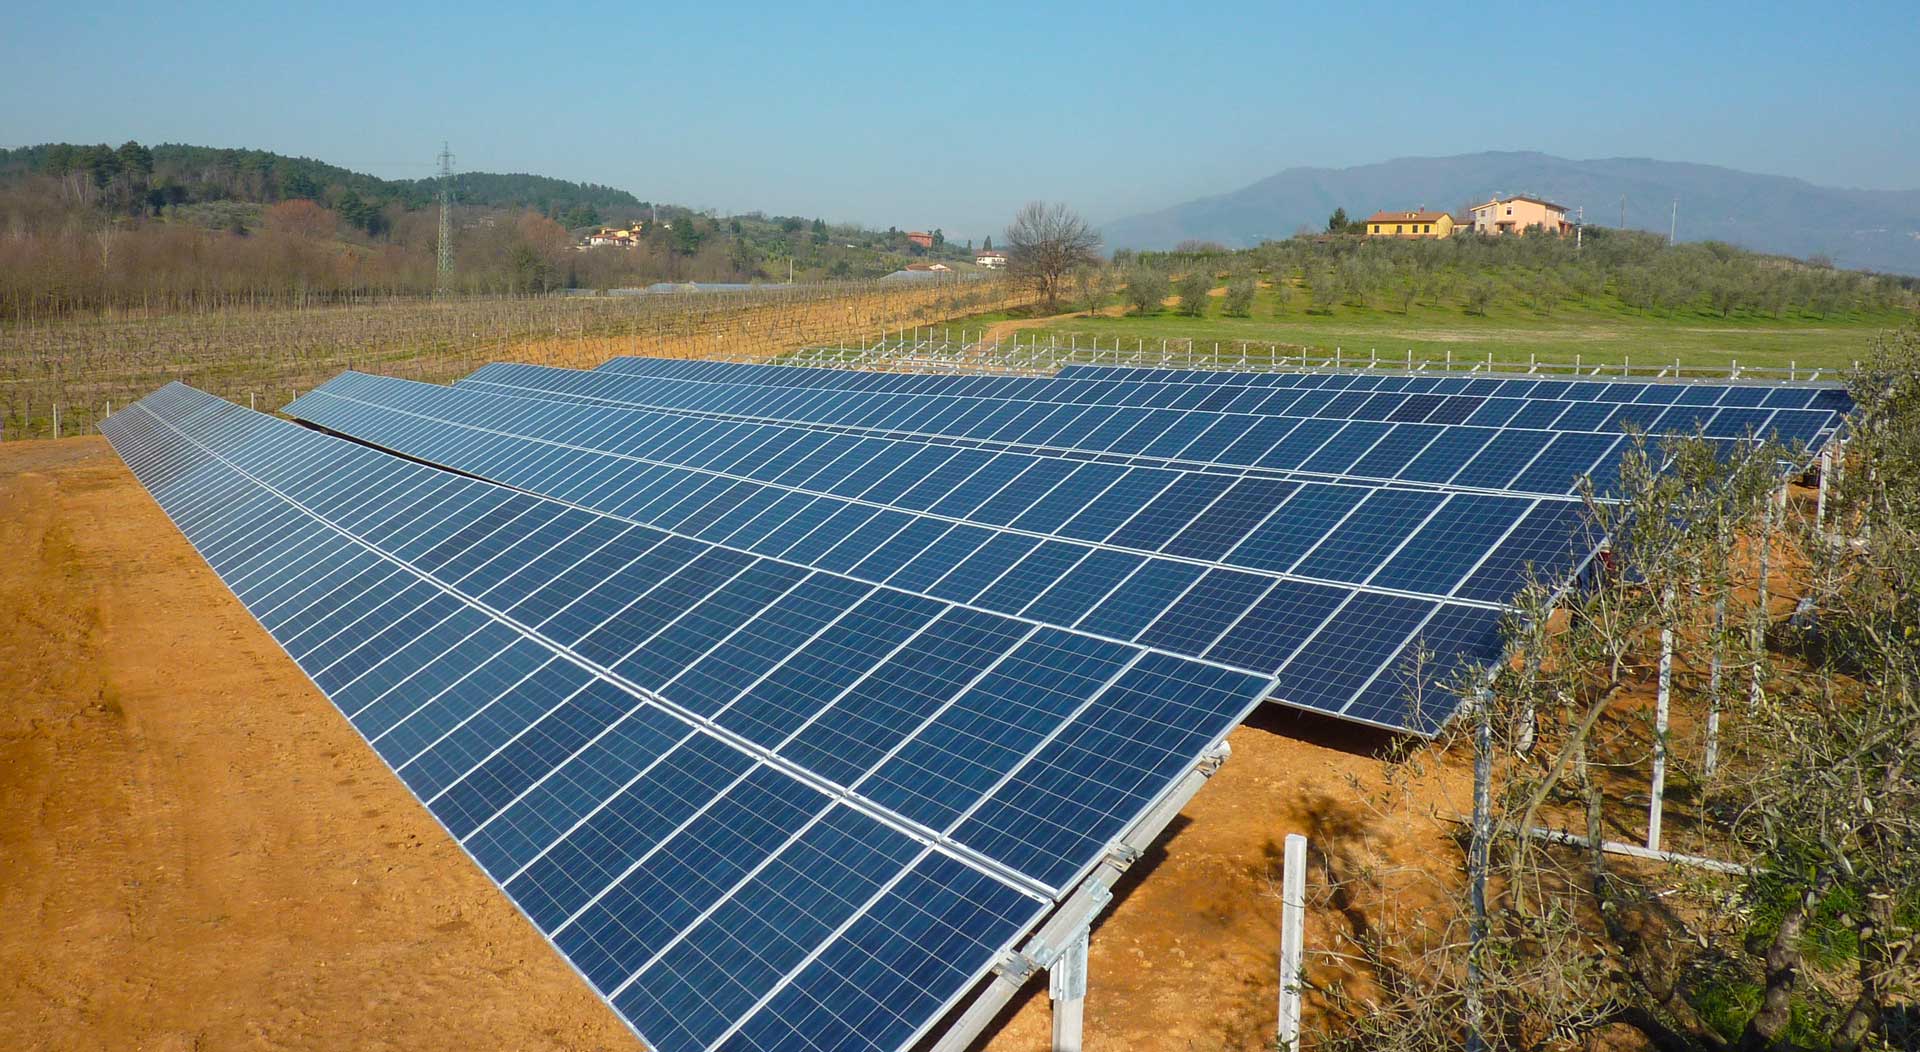 Anyenergia S.r.l. impianto fotovoltaico a terra per la produzione di energia pulita nella Valdinievole a Massa e Cozzile (PT)